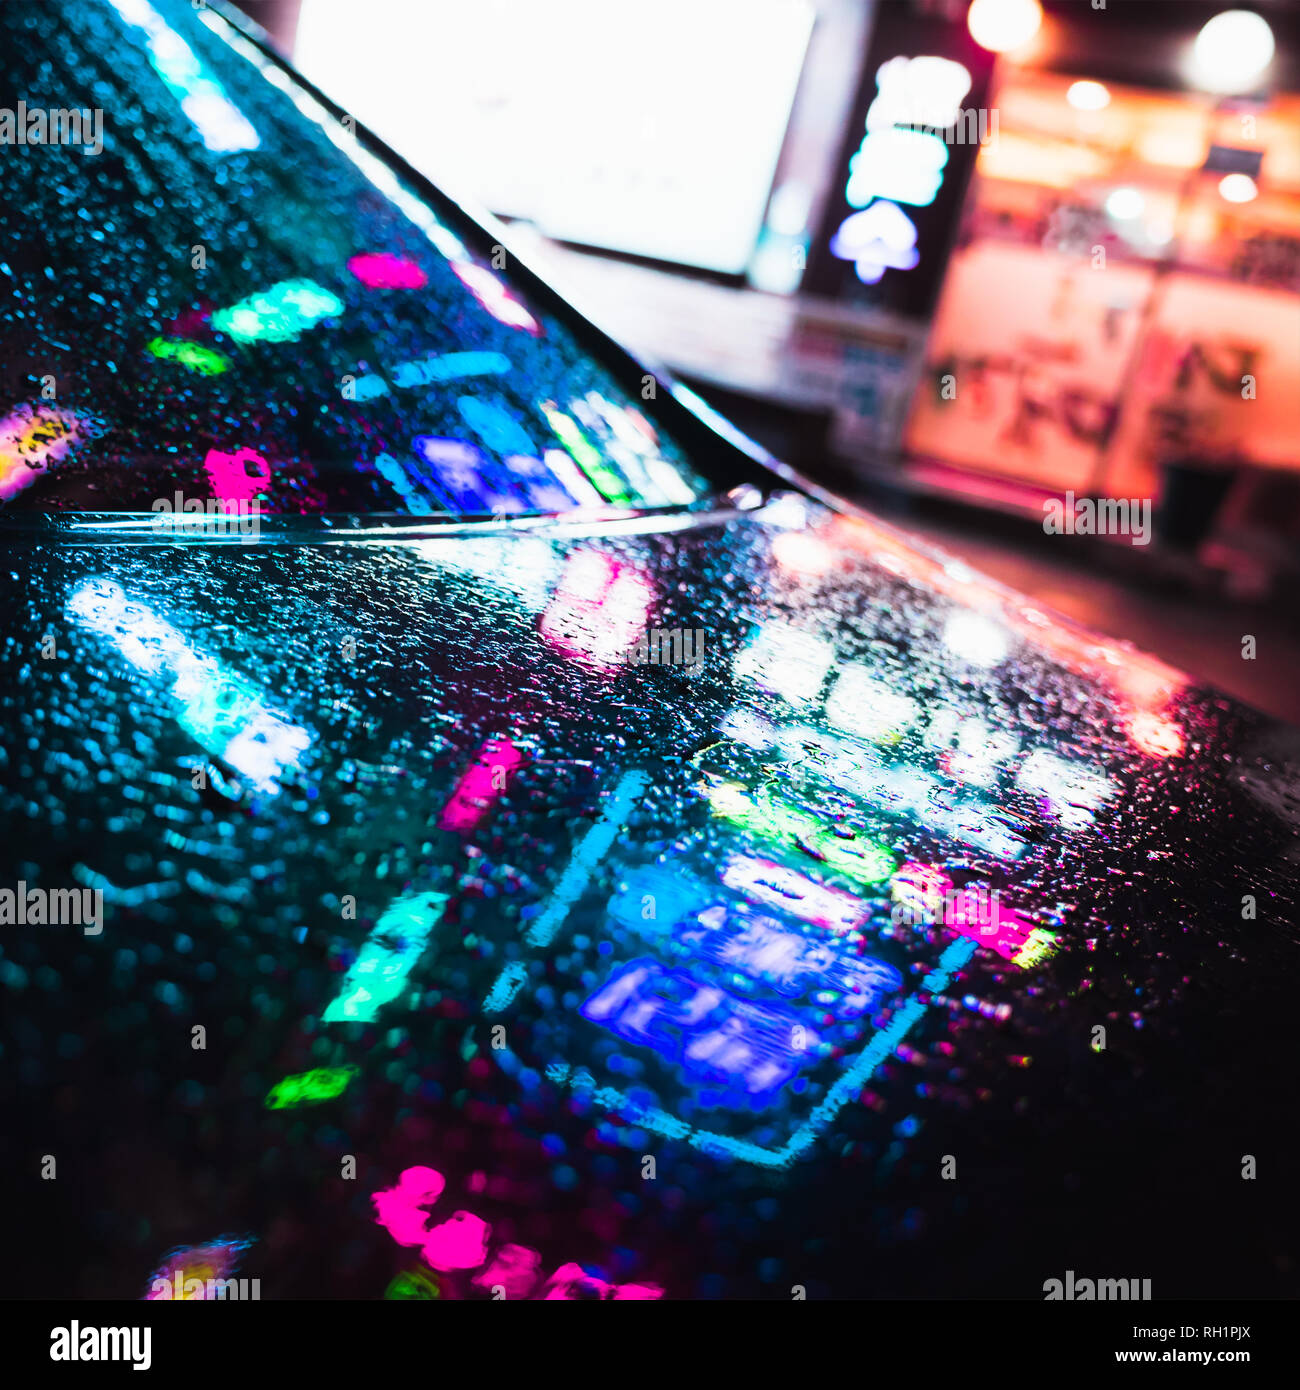 Bunte Reflexionen und Regentropfen auf nassen Auto Haube. Abstract Night City Square Hintergrund Stockfoto